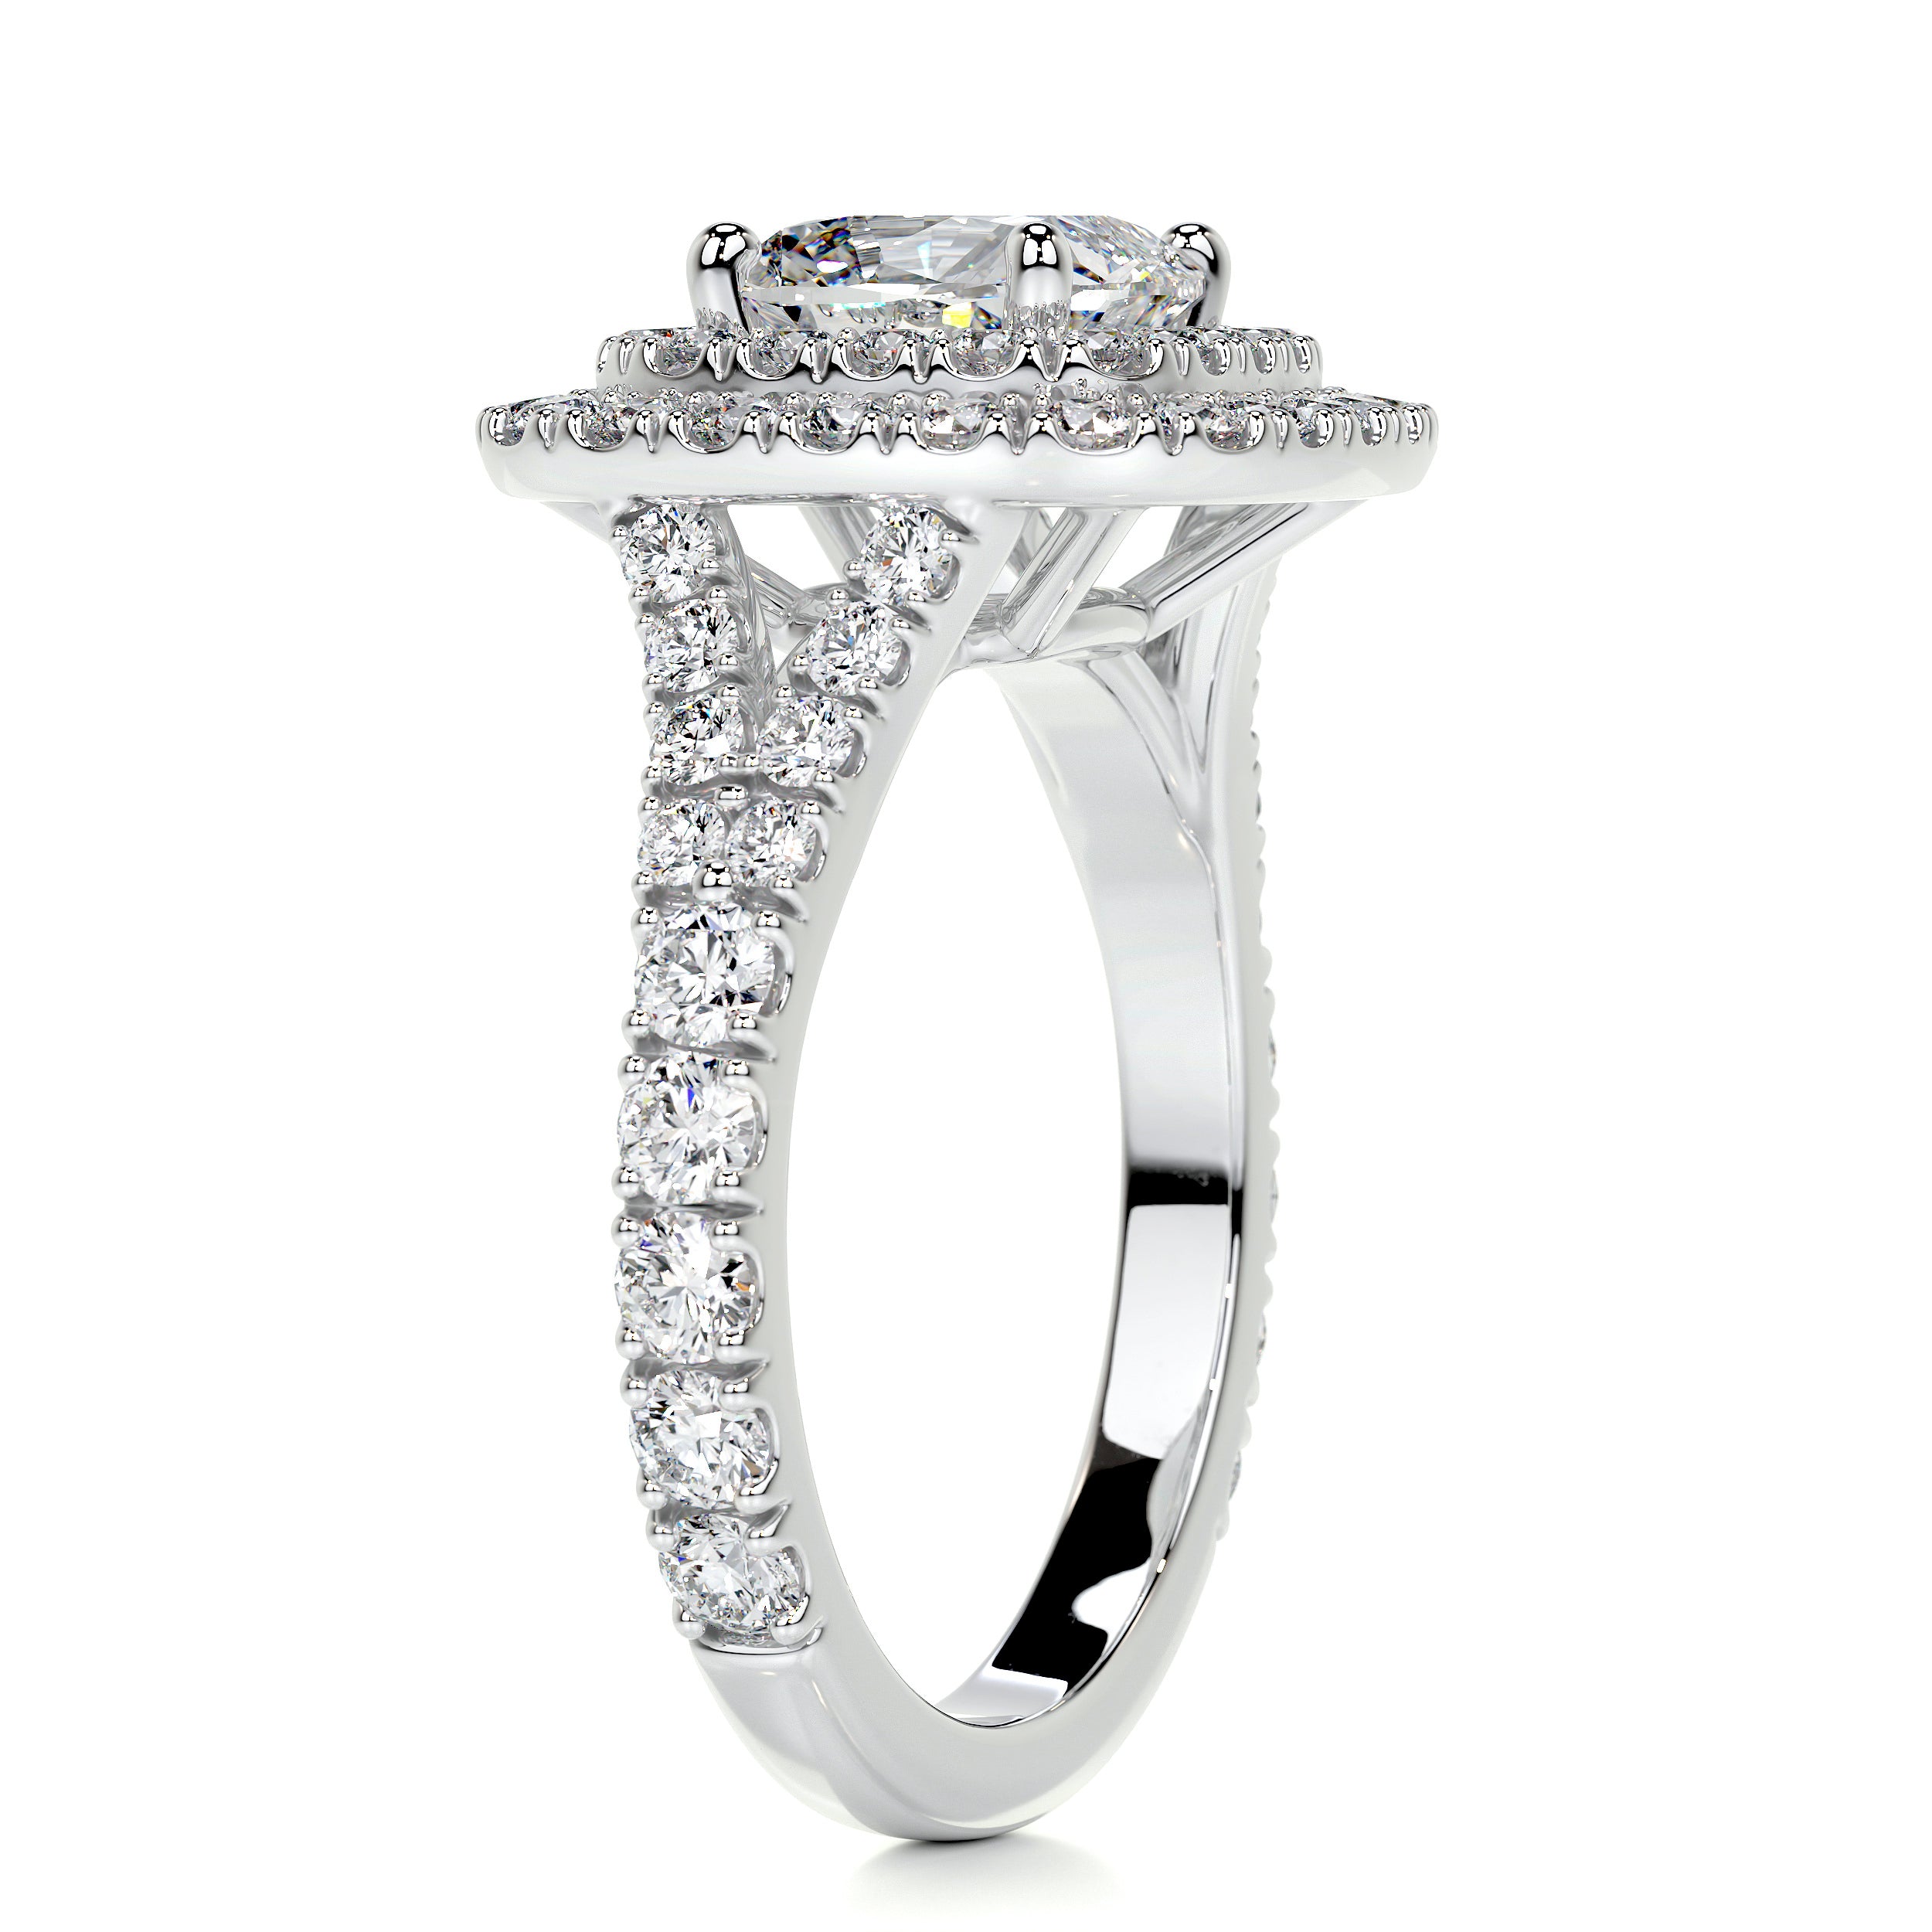 Tina Diamond Engagement Ring   (2.5 Carat) -14K White Gold